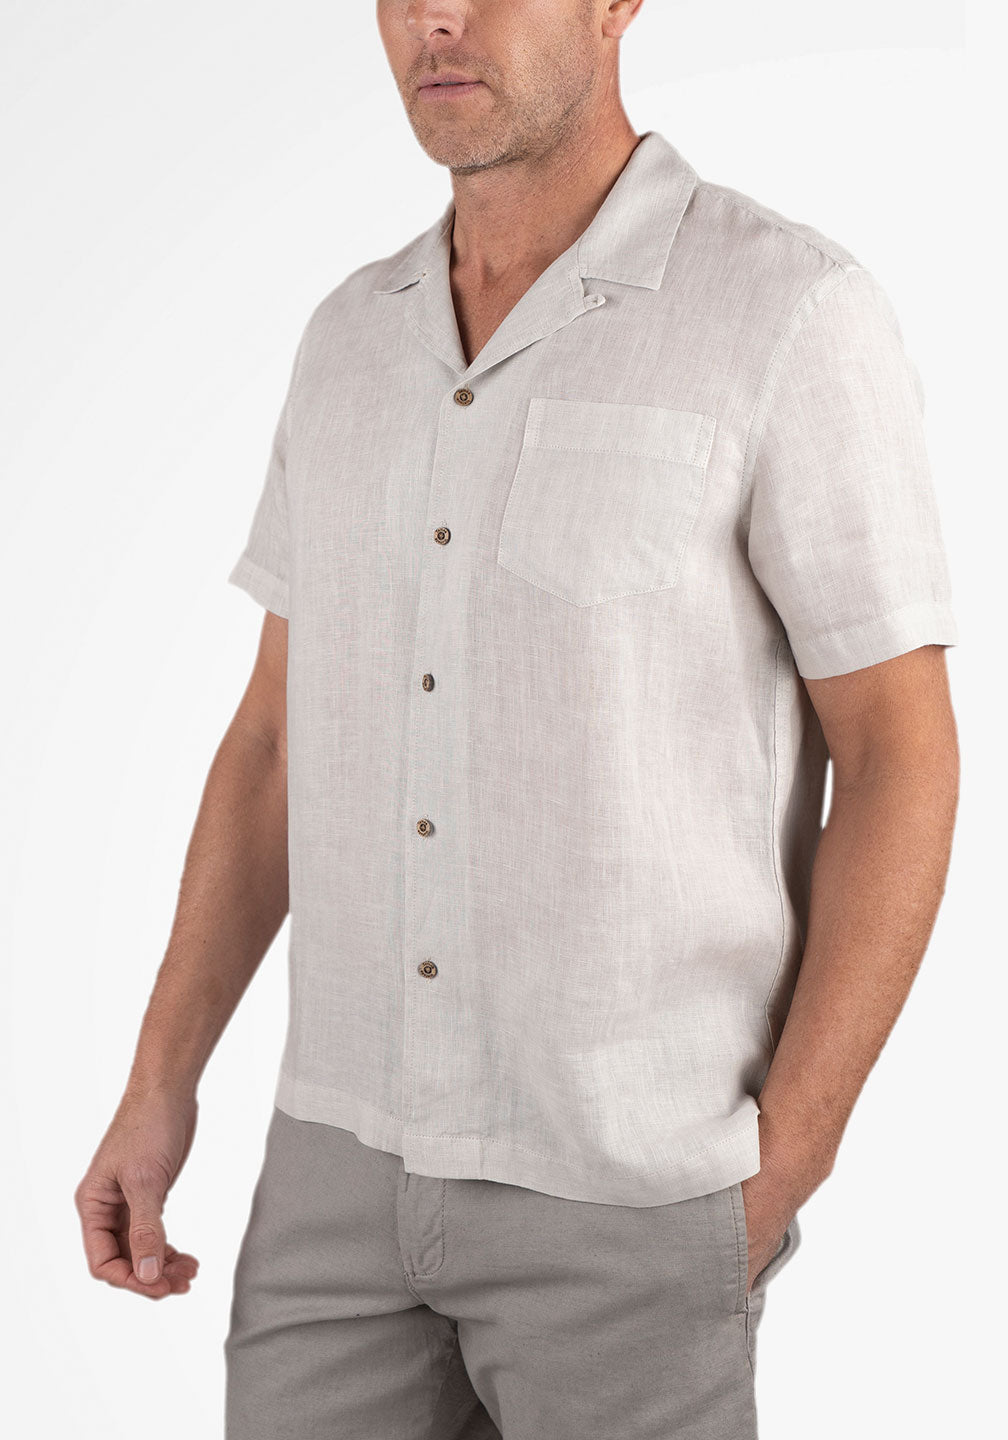 Puretec cool® Linen Cabana Shirt – Tailor Vintage